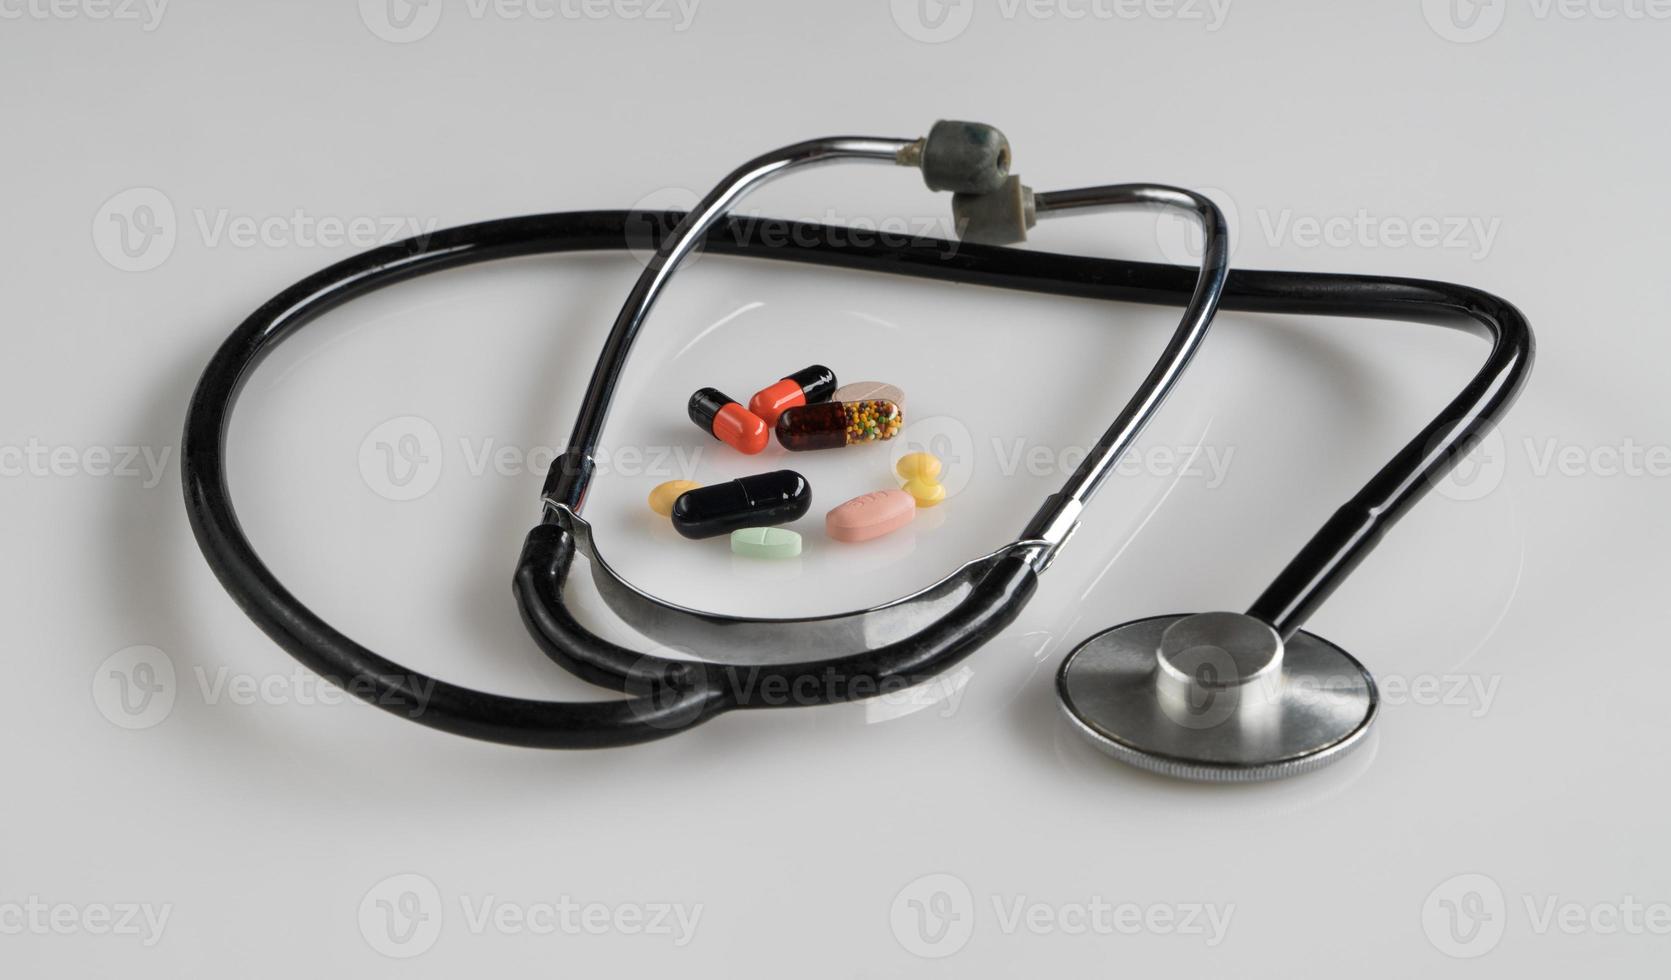 medicinskt stetoskop med piller på vit bakgrund, isolerade foto